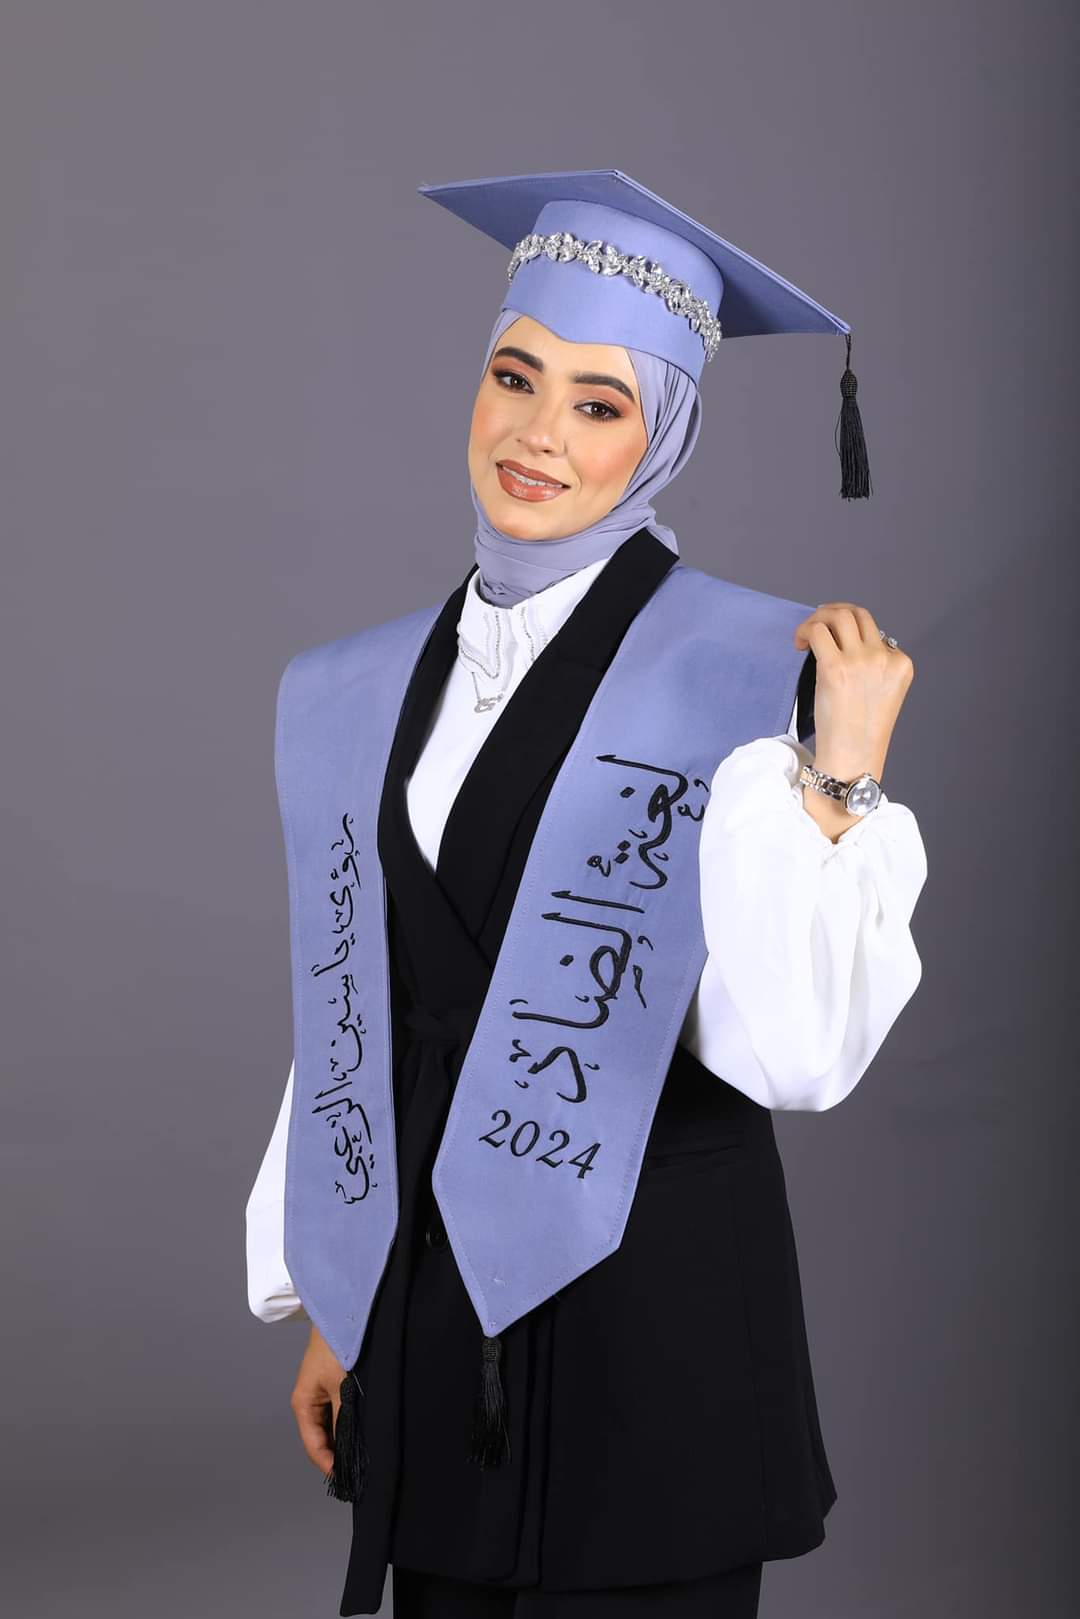 الزميلة غيداء العواملة تهنئ رؤى ياسين الزعبي بتخرجها من جامعة البلقاء التطبيقية